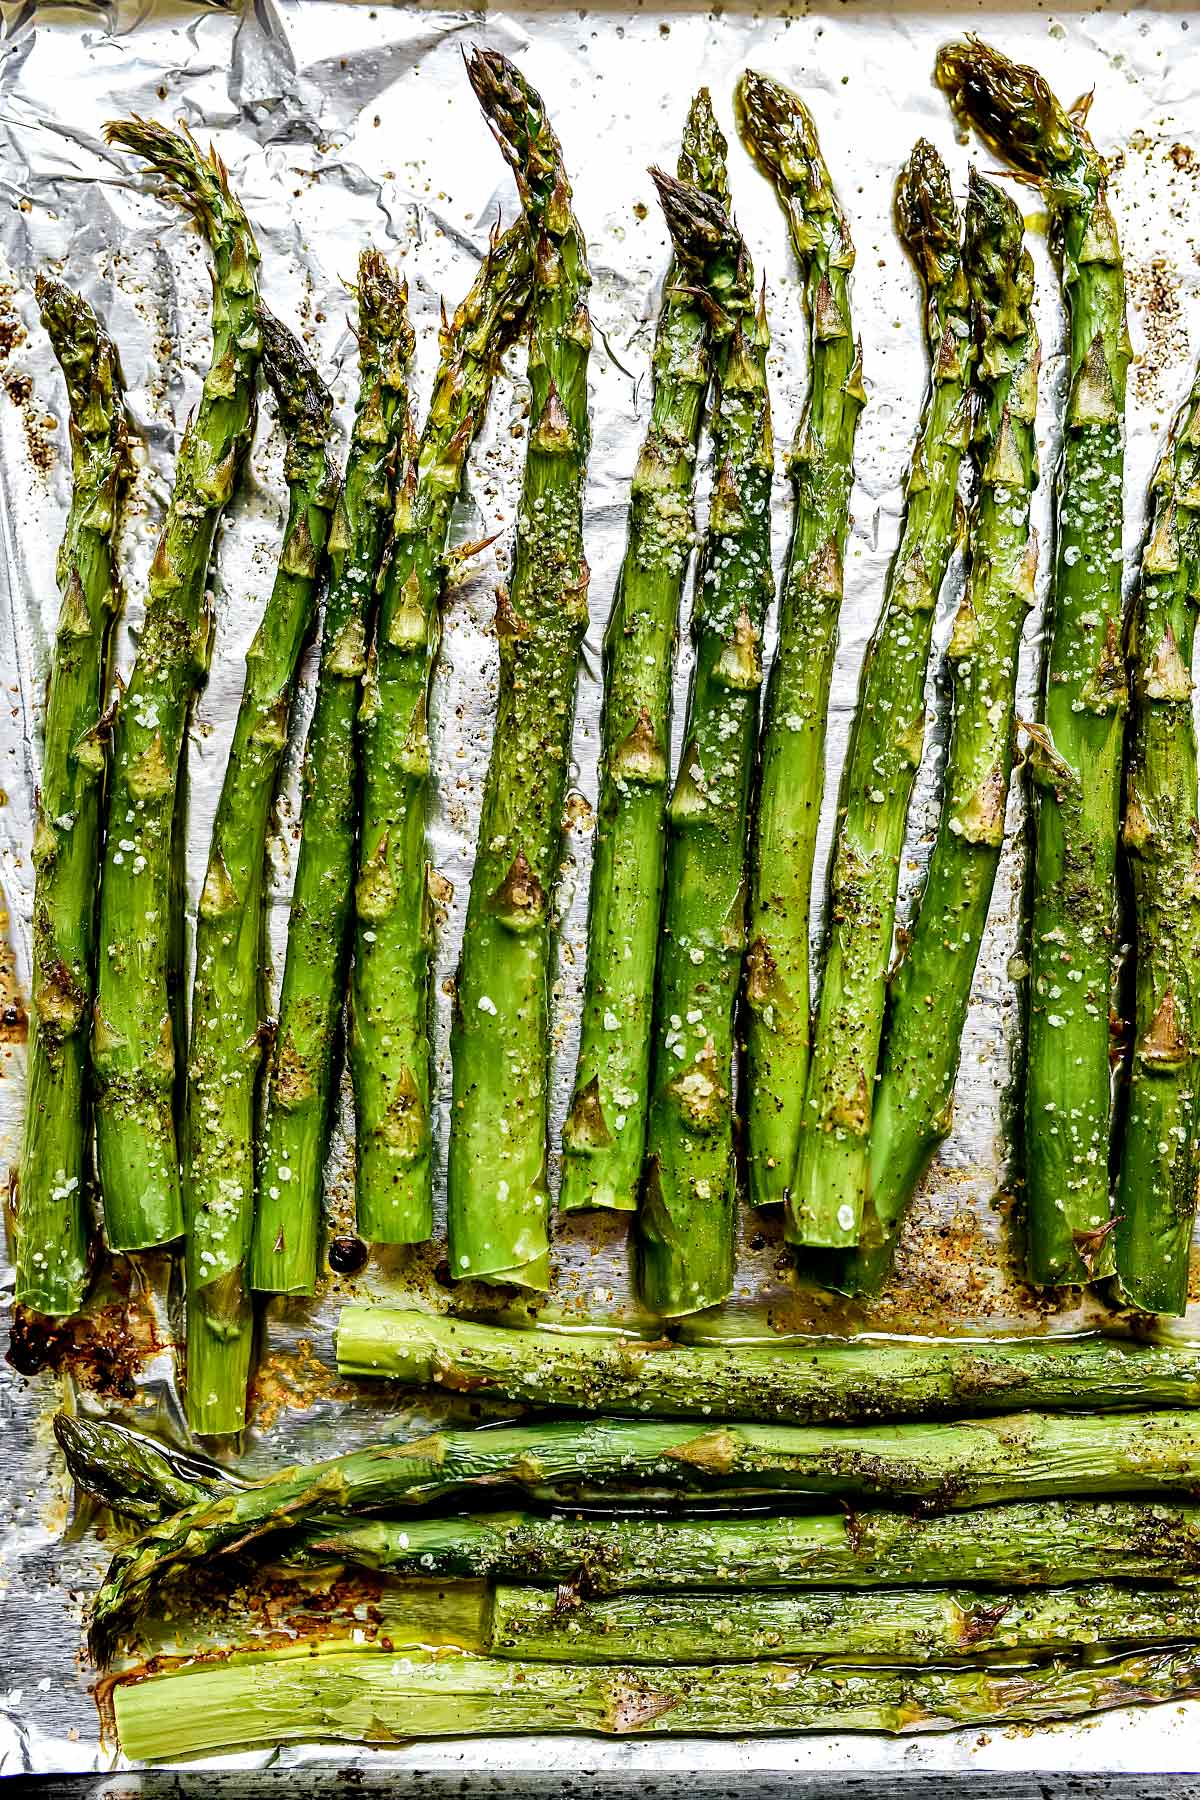 Roasted Asparagus foodiecrush.com 005